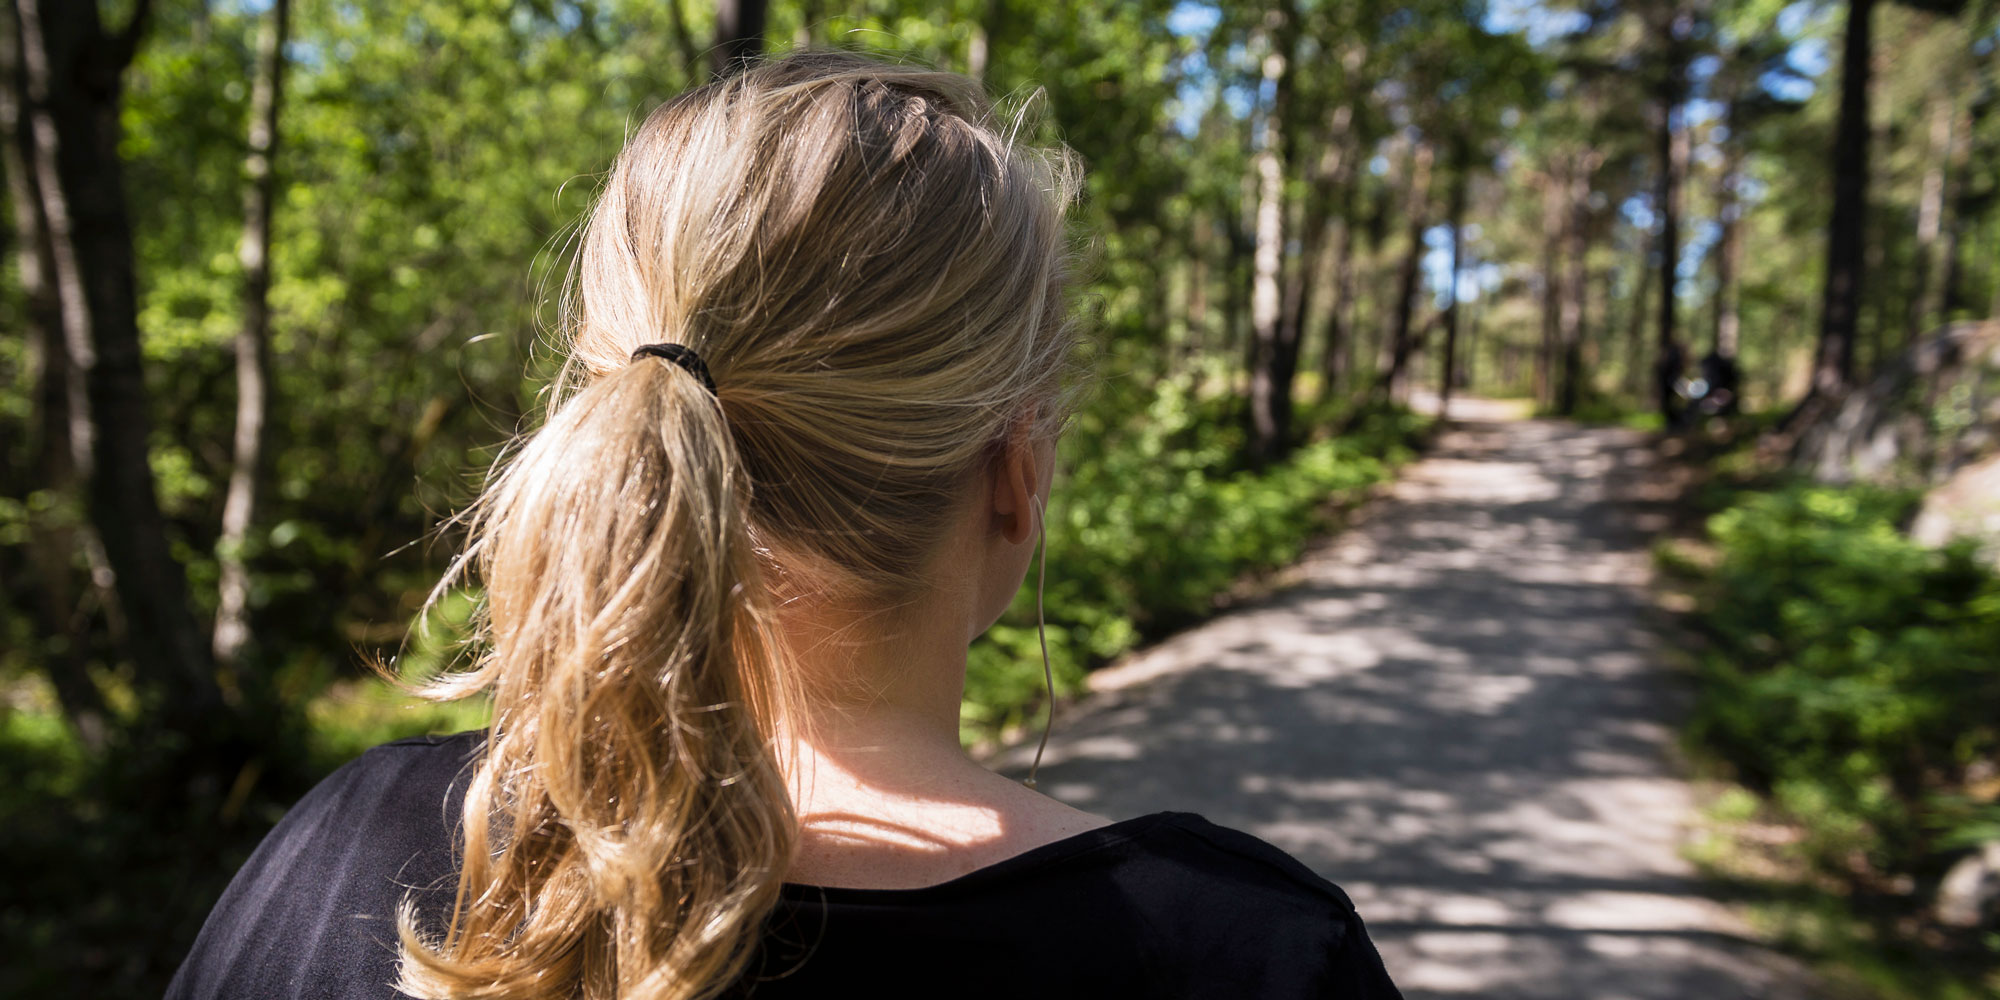 Kvinna sedd bakifrån med blond hästsvans, på en somrig skogsstig.